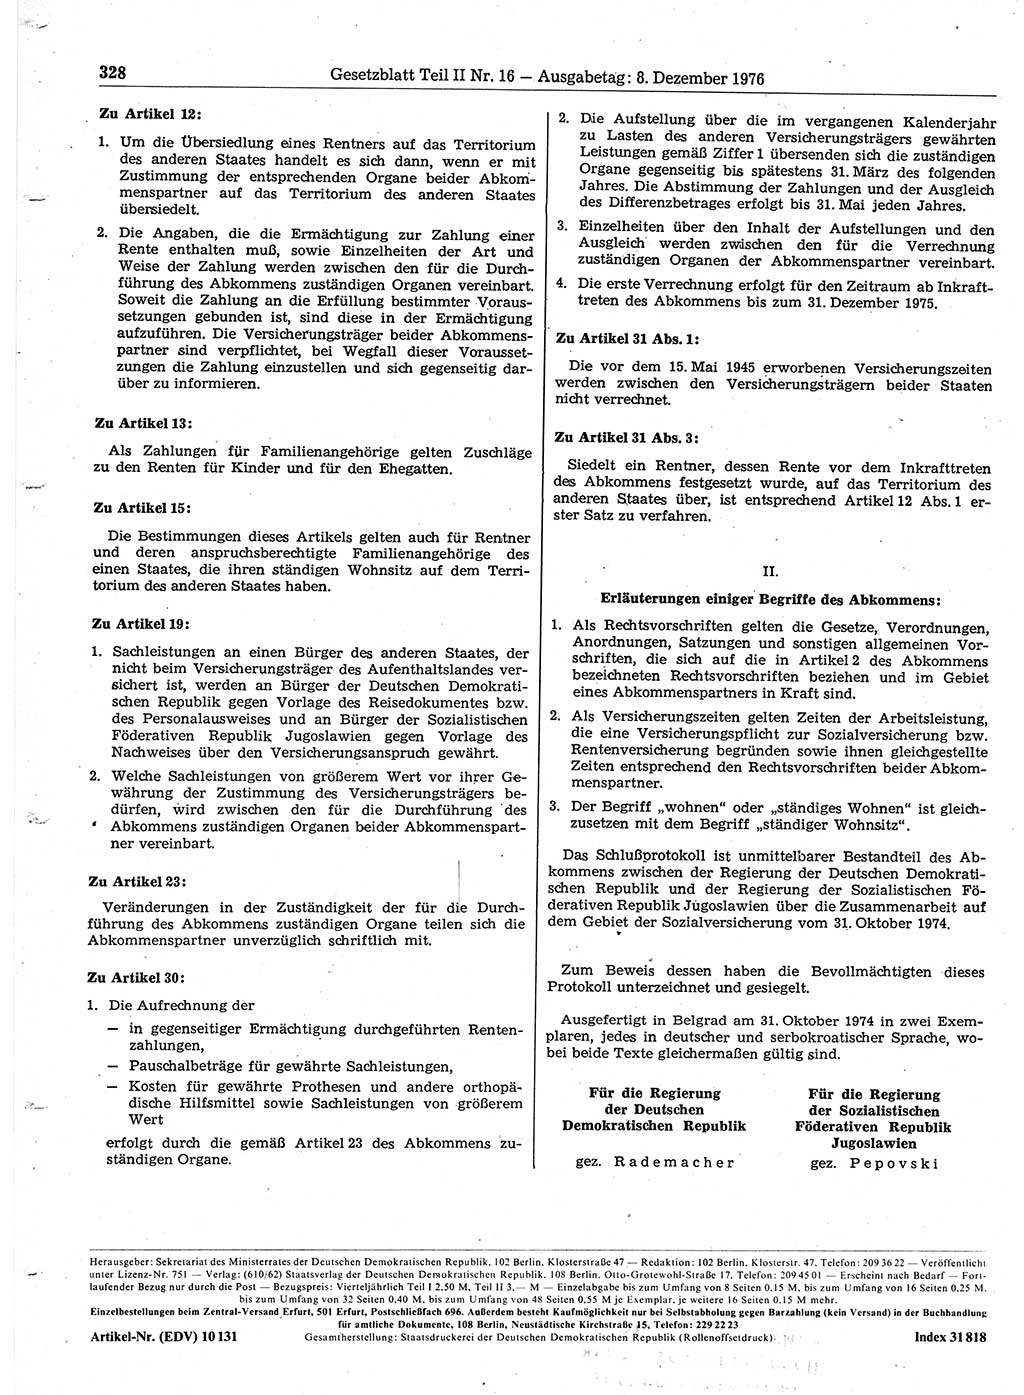 Gesetzblatt (GBl.) der Deutschen Demokratischen Republik (DDR) Teil ⅠⅠ 1976, Seite 328 (GBl. DDR ⅠⅠ 1976, S. 328)